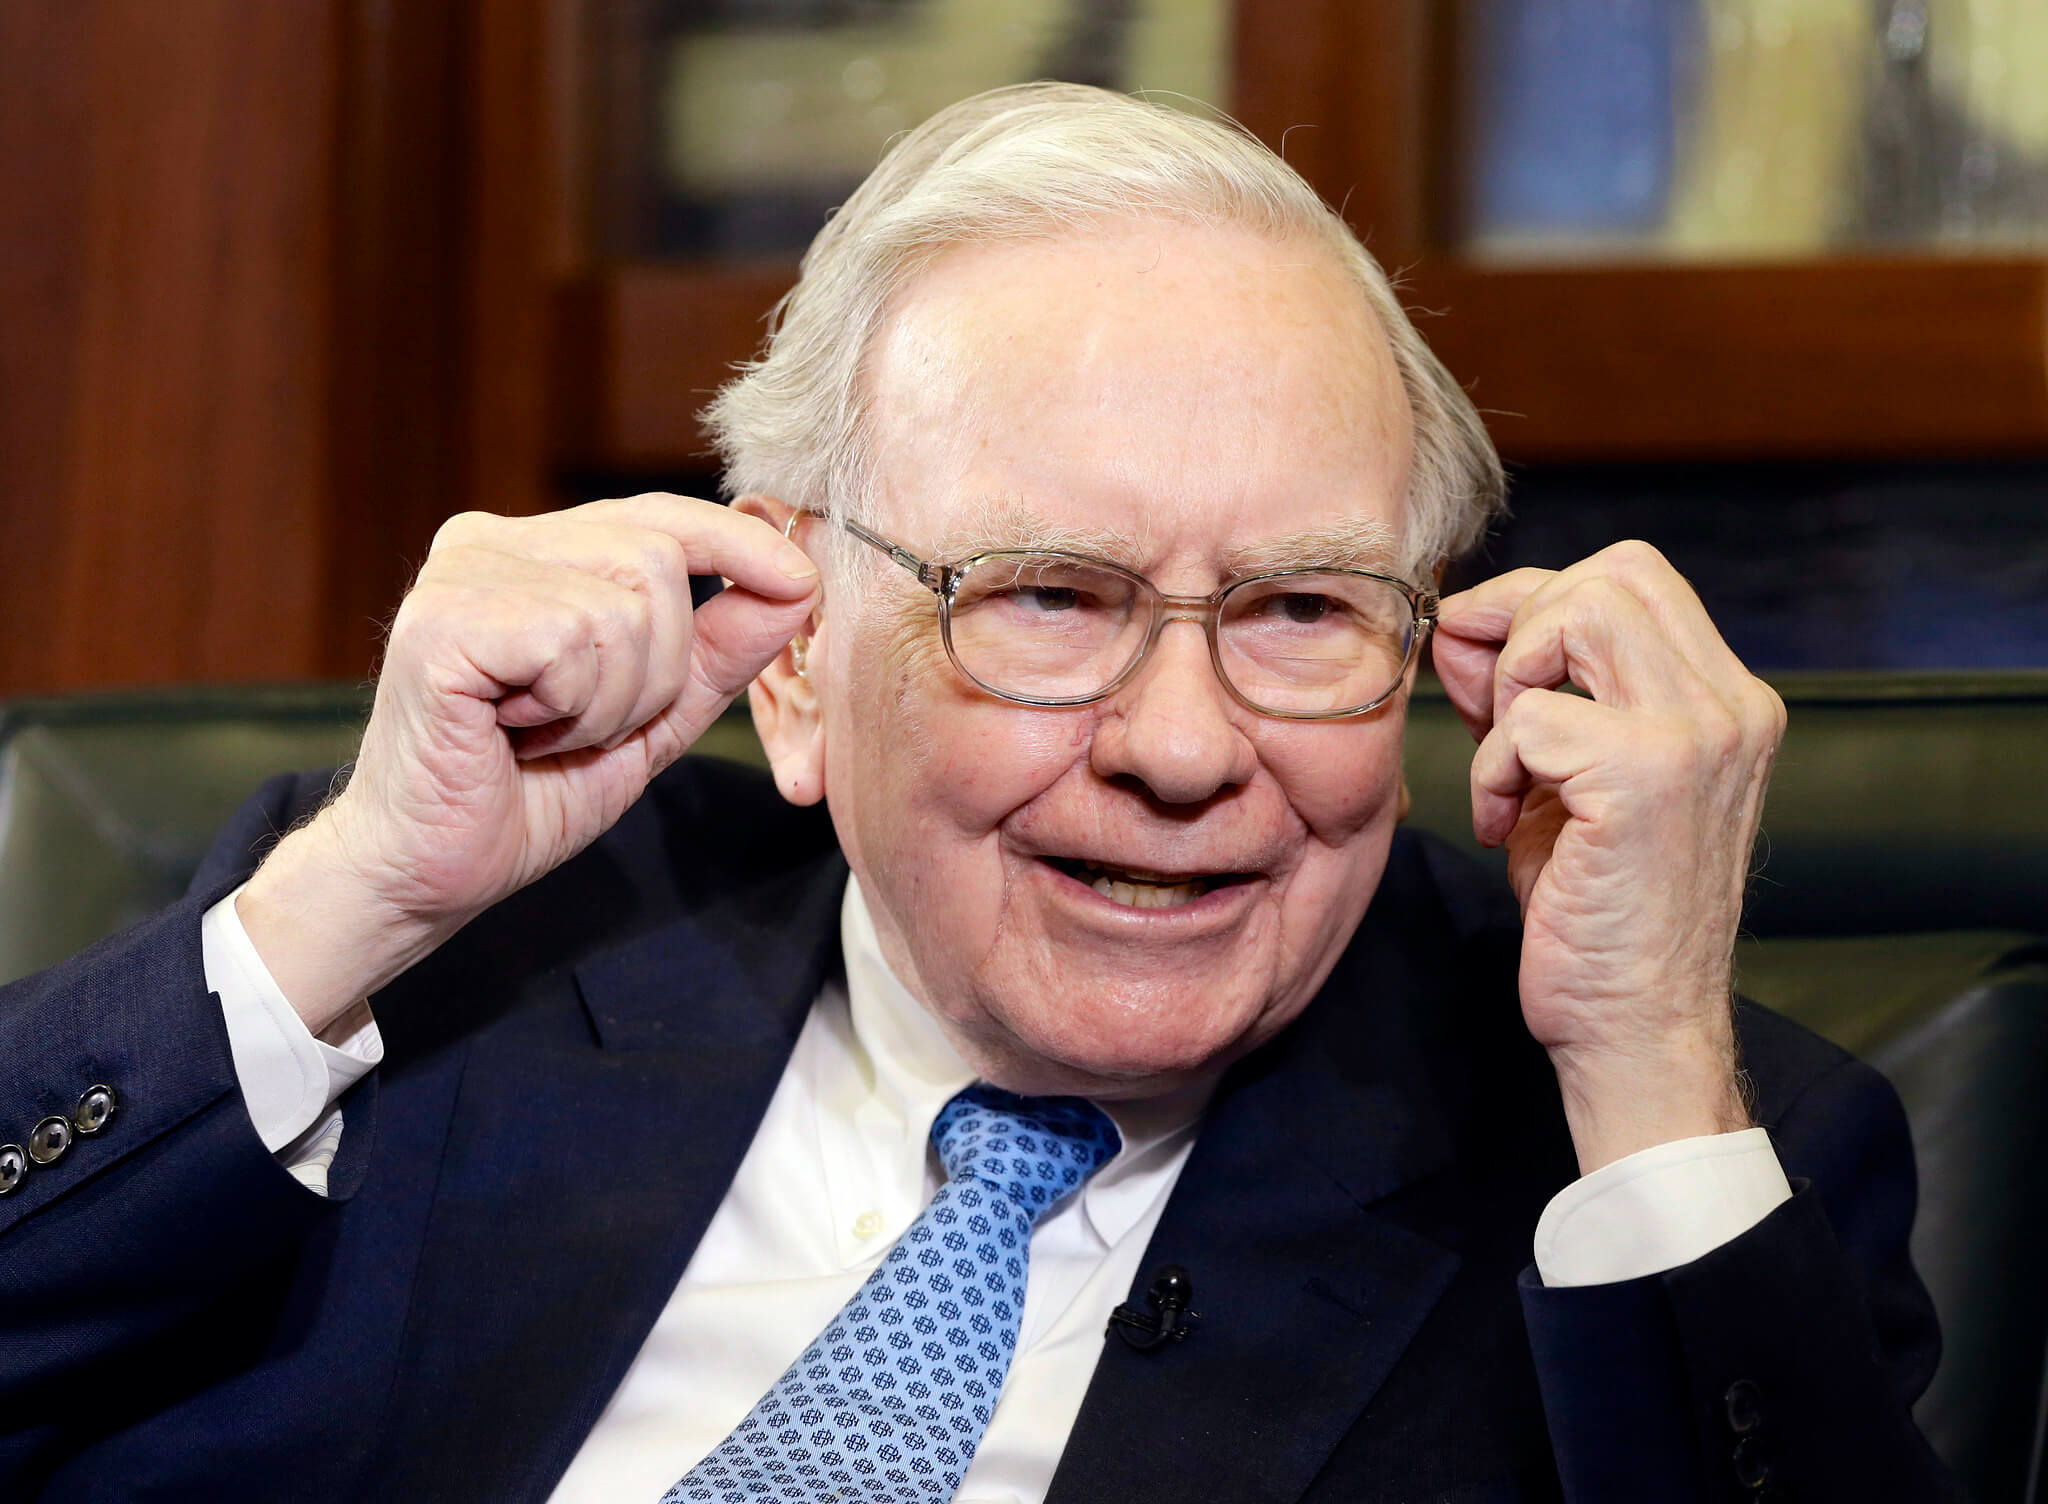 15 Things I Learnt from Warren Buffet